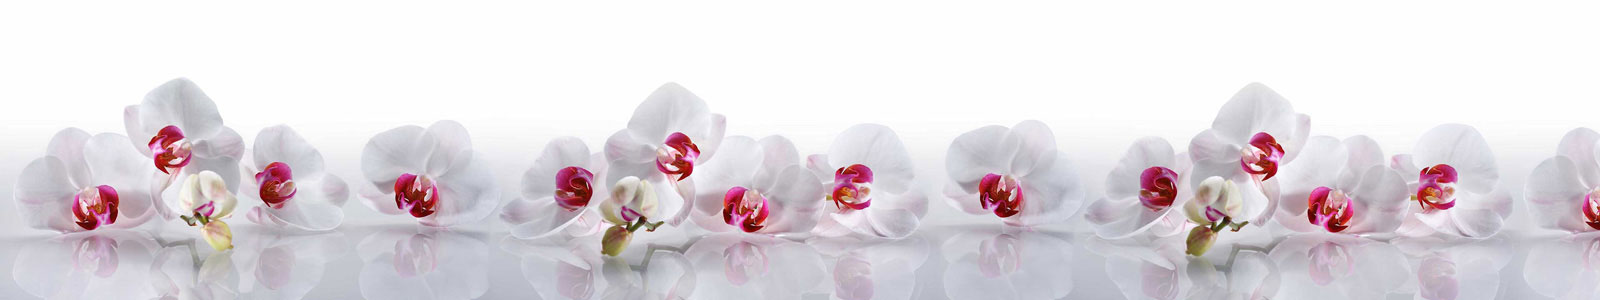 №6225 - Белые орхидеи с отражением